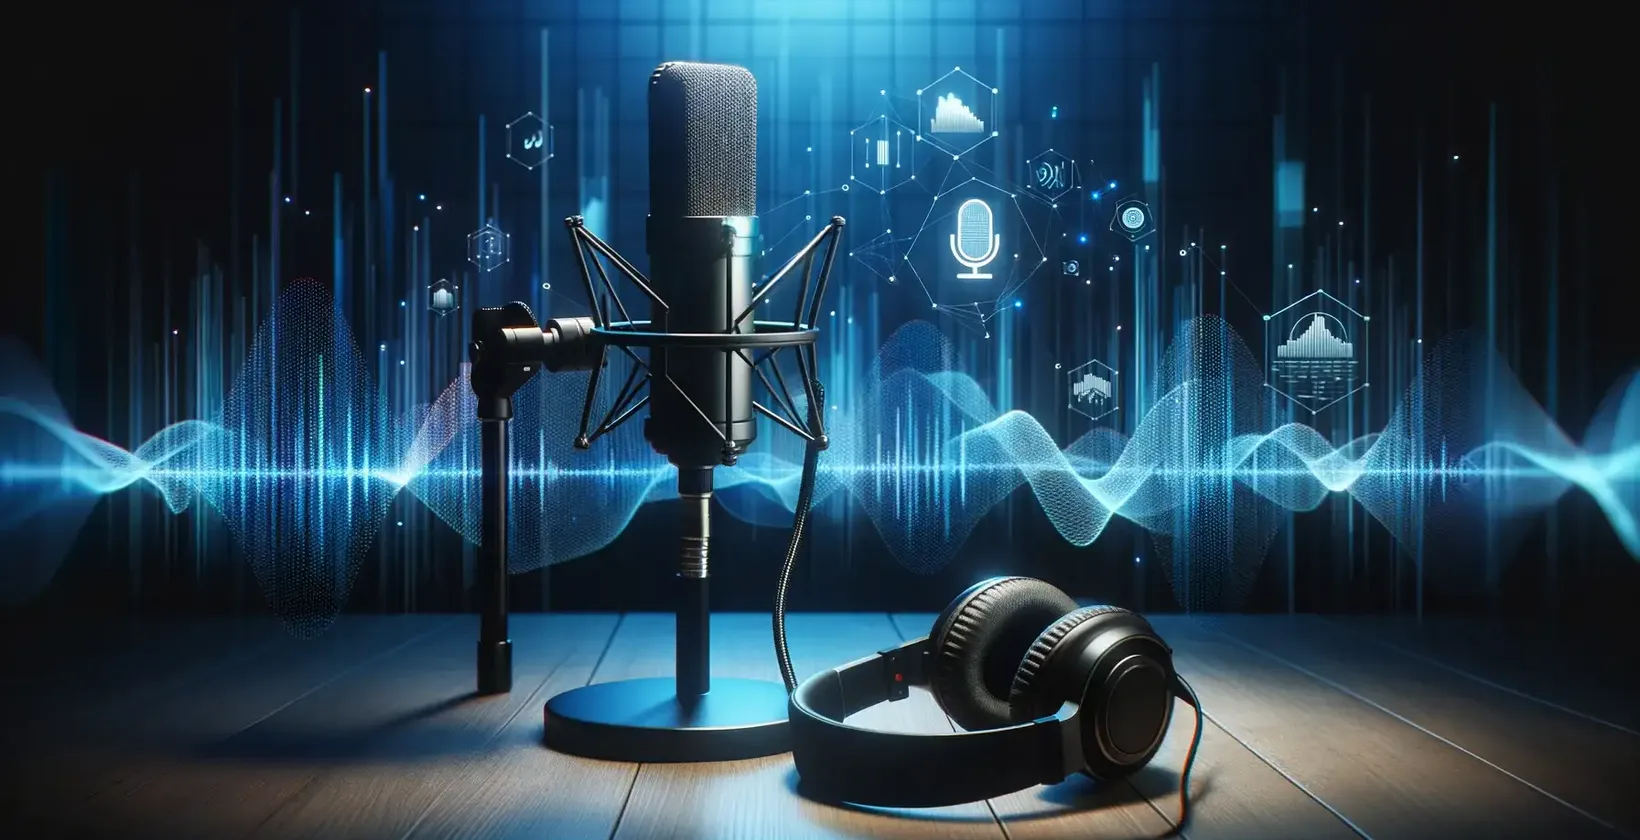 Microfone e fones de ouvido em uma mesa de madeira, usados para conversão de voz em texto no Salesforce